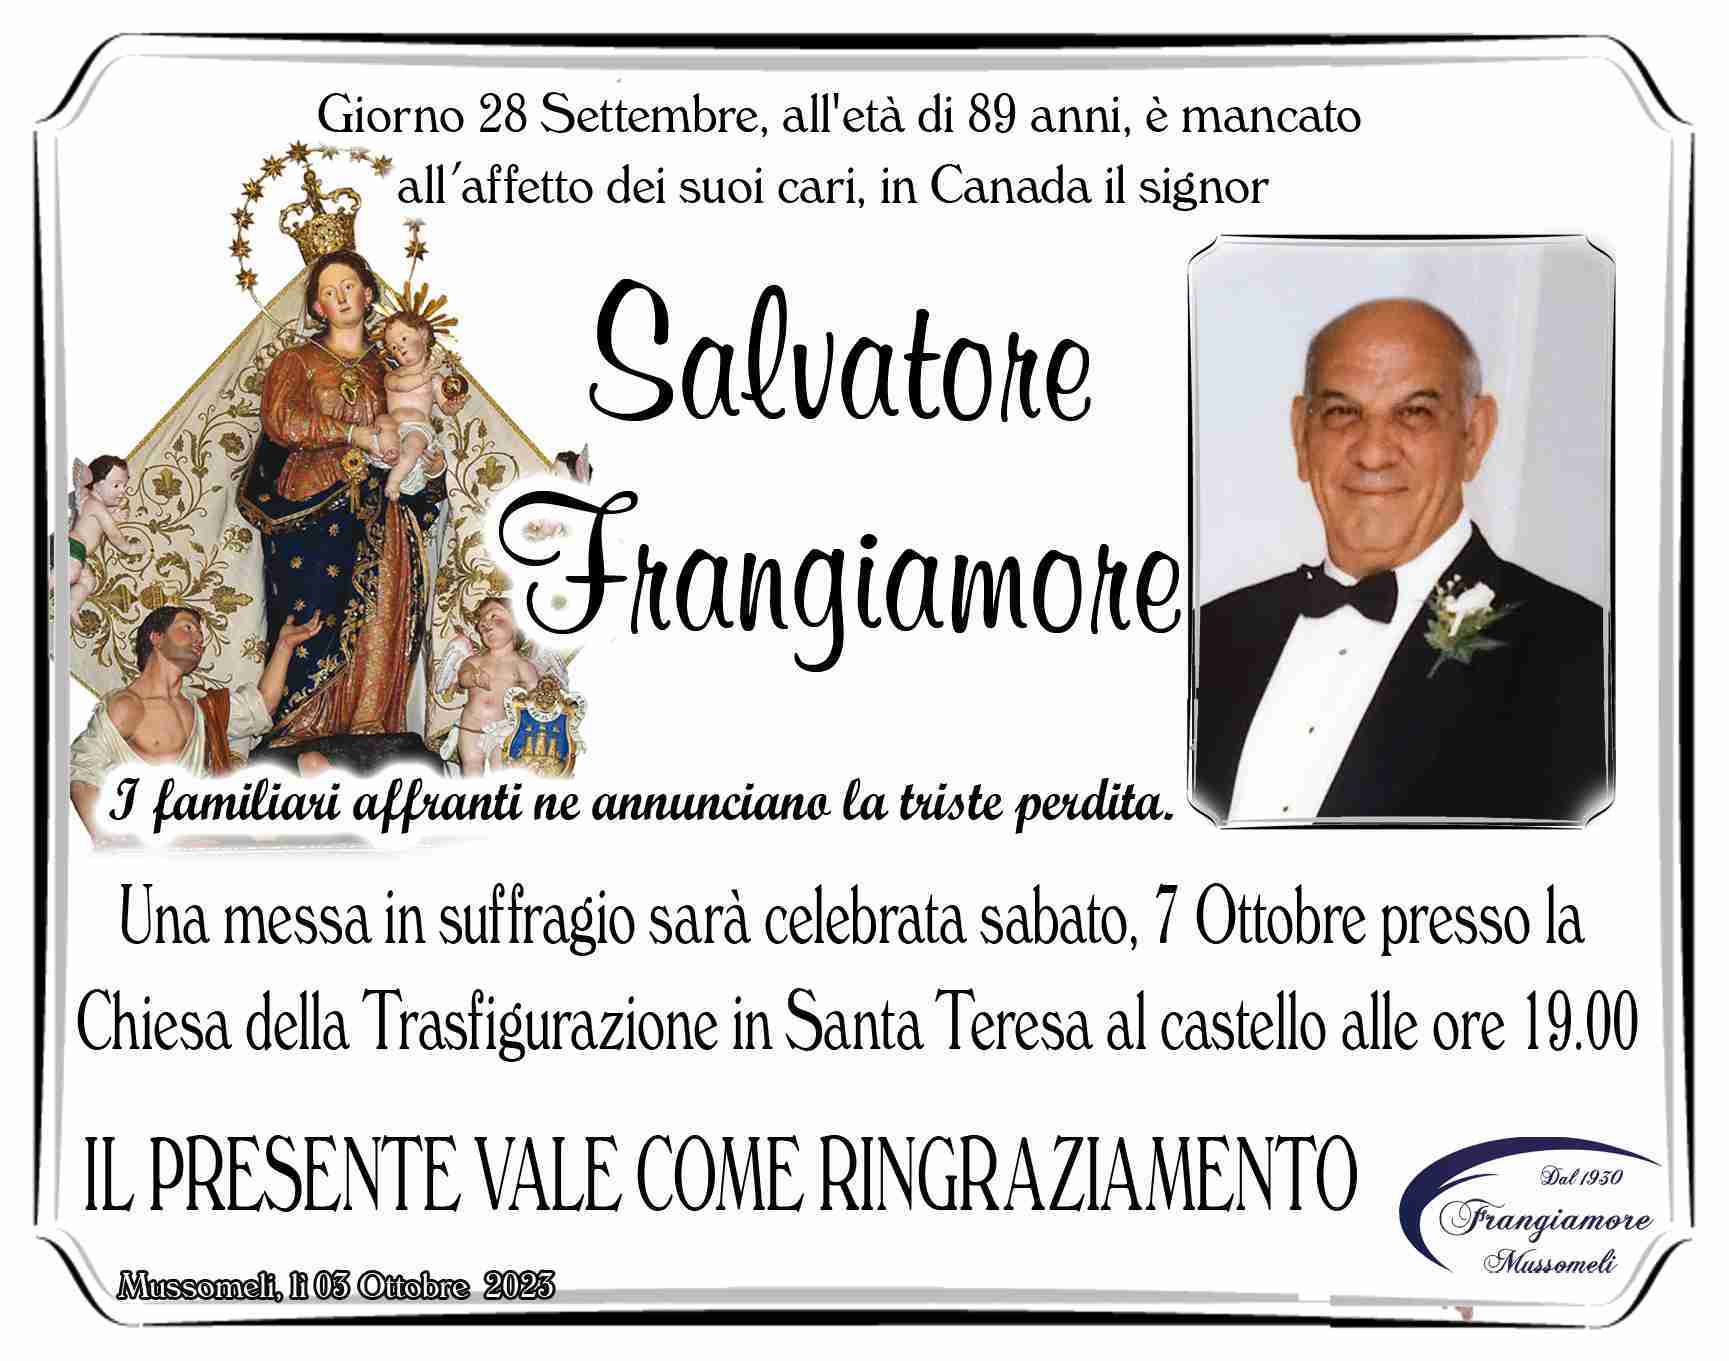 Frangiamore Salvatore